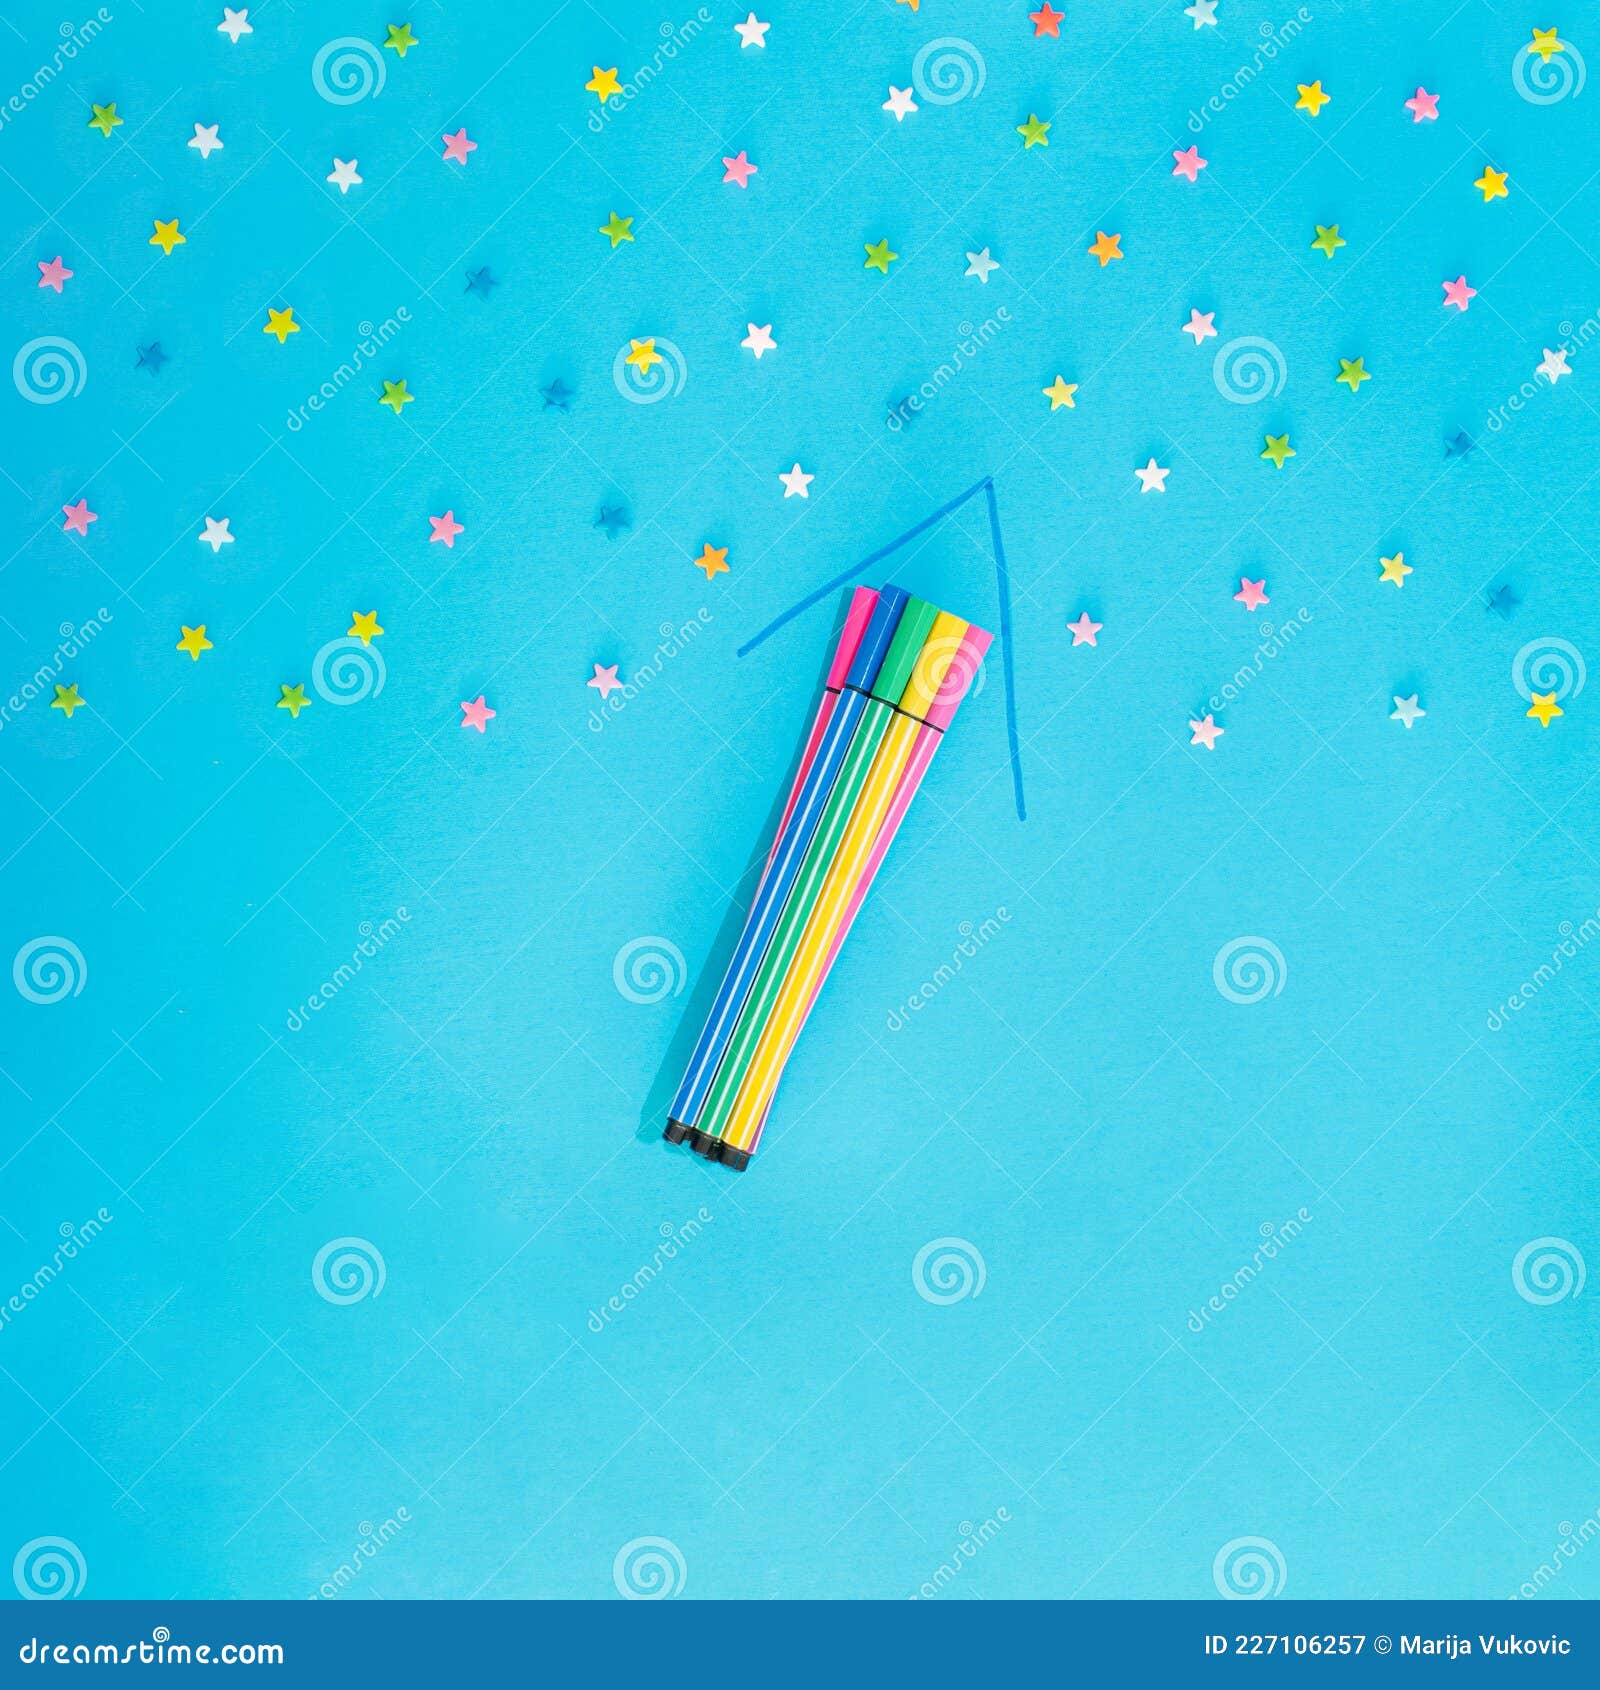 Nét viết của bạn sẽ chẳng bao giờ còn nhạt nhẽo với bút lông tuyệt đẹp này. Sự kết hợp giữa màu sắc rực rỡ với độ dẻo dai hoàn hảo của bút lông, bạn sẽ có được những bức vẽ và chữ viết tuyệt đẹp.